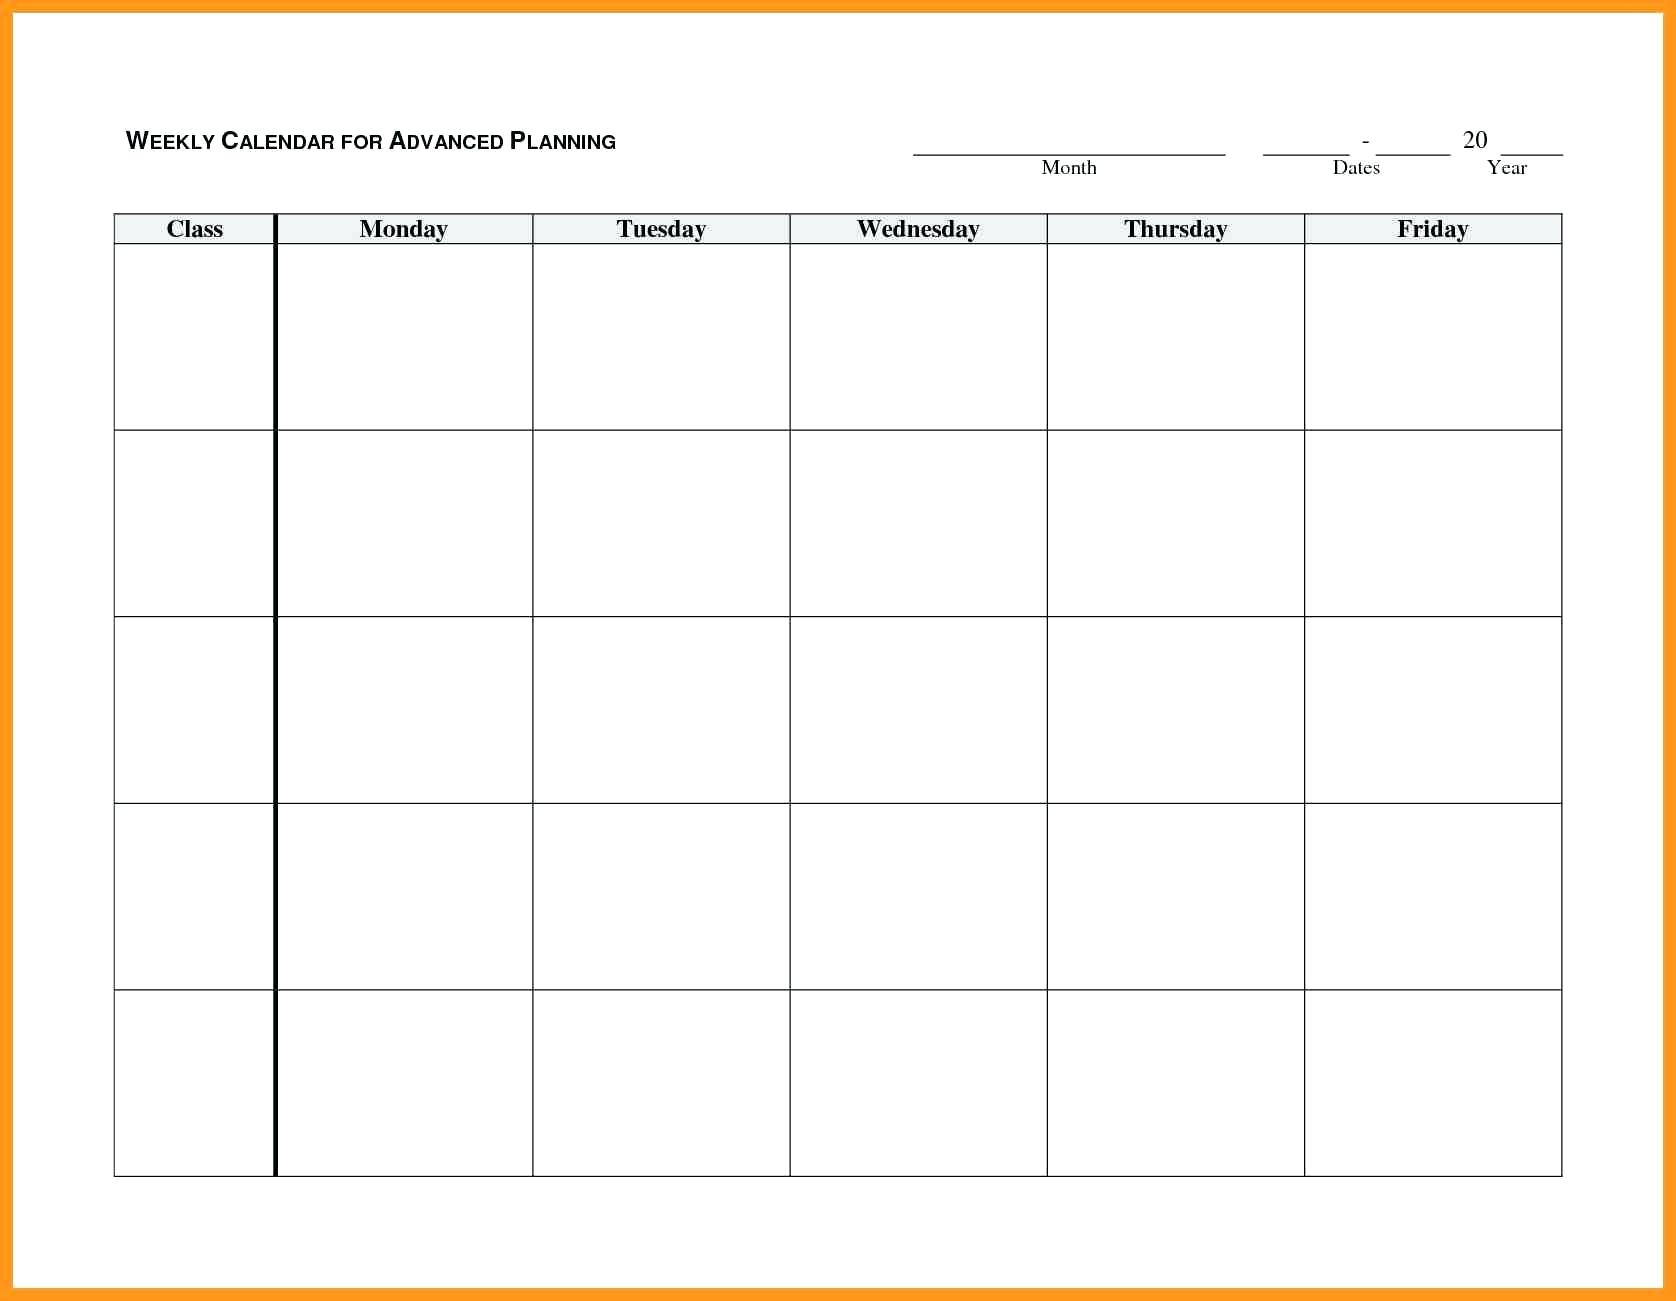 Blank Mondayfriday Calendar Templates | Example Calendar Printable for Mon - Friday Am Pm Calendar